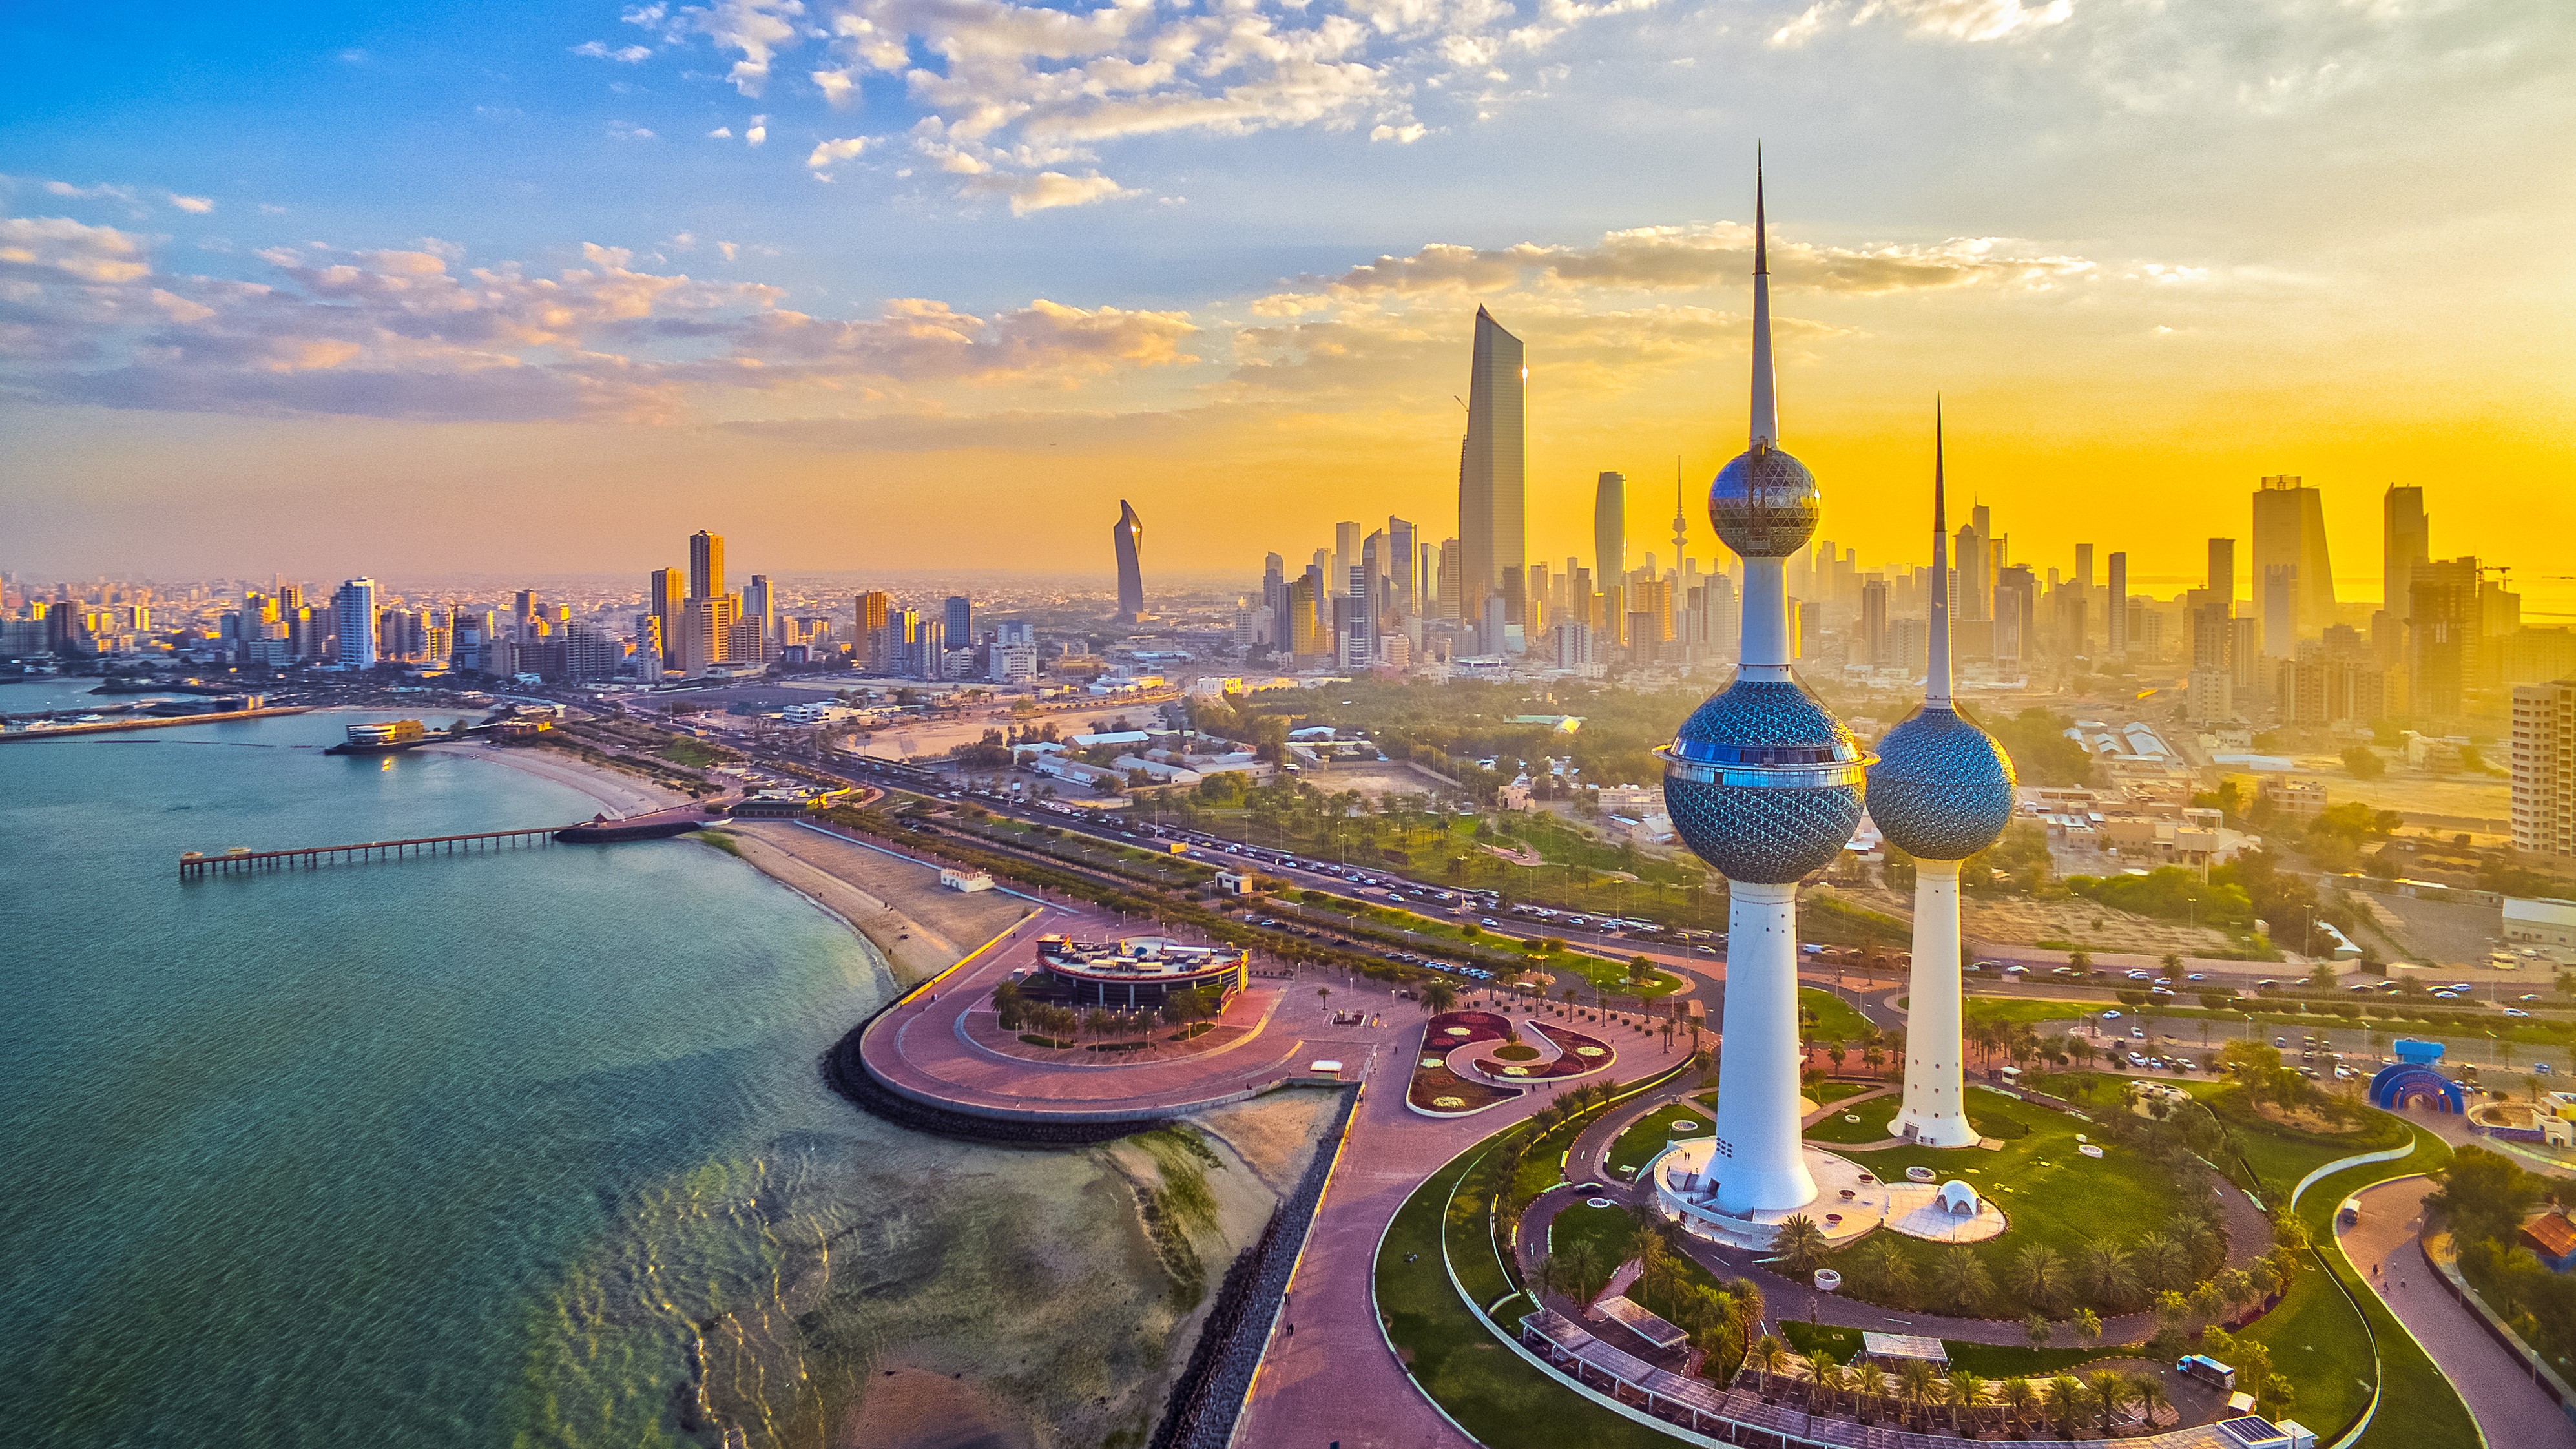 آنچه قبل از صادرات به کویت باید بدانیم | الوبیزنس